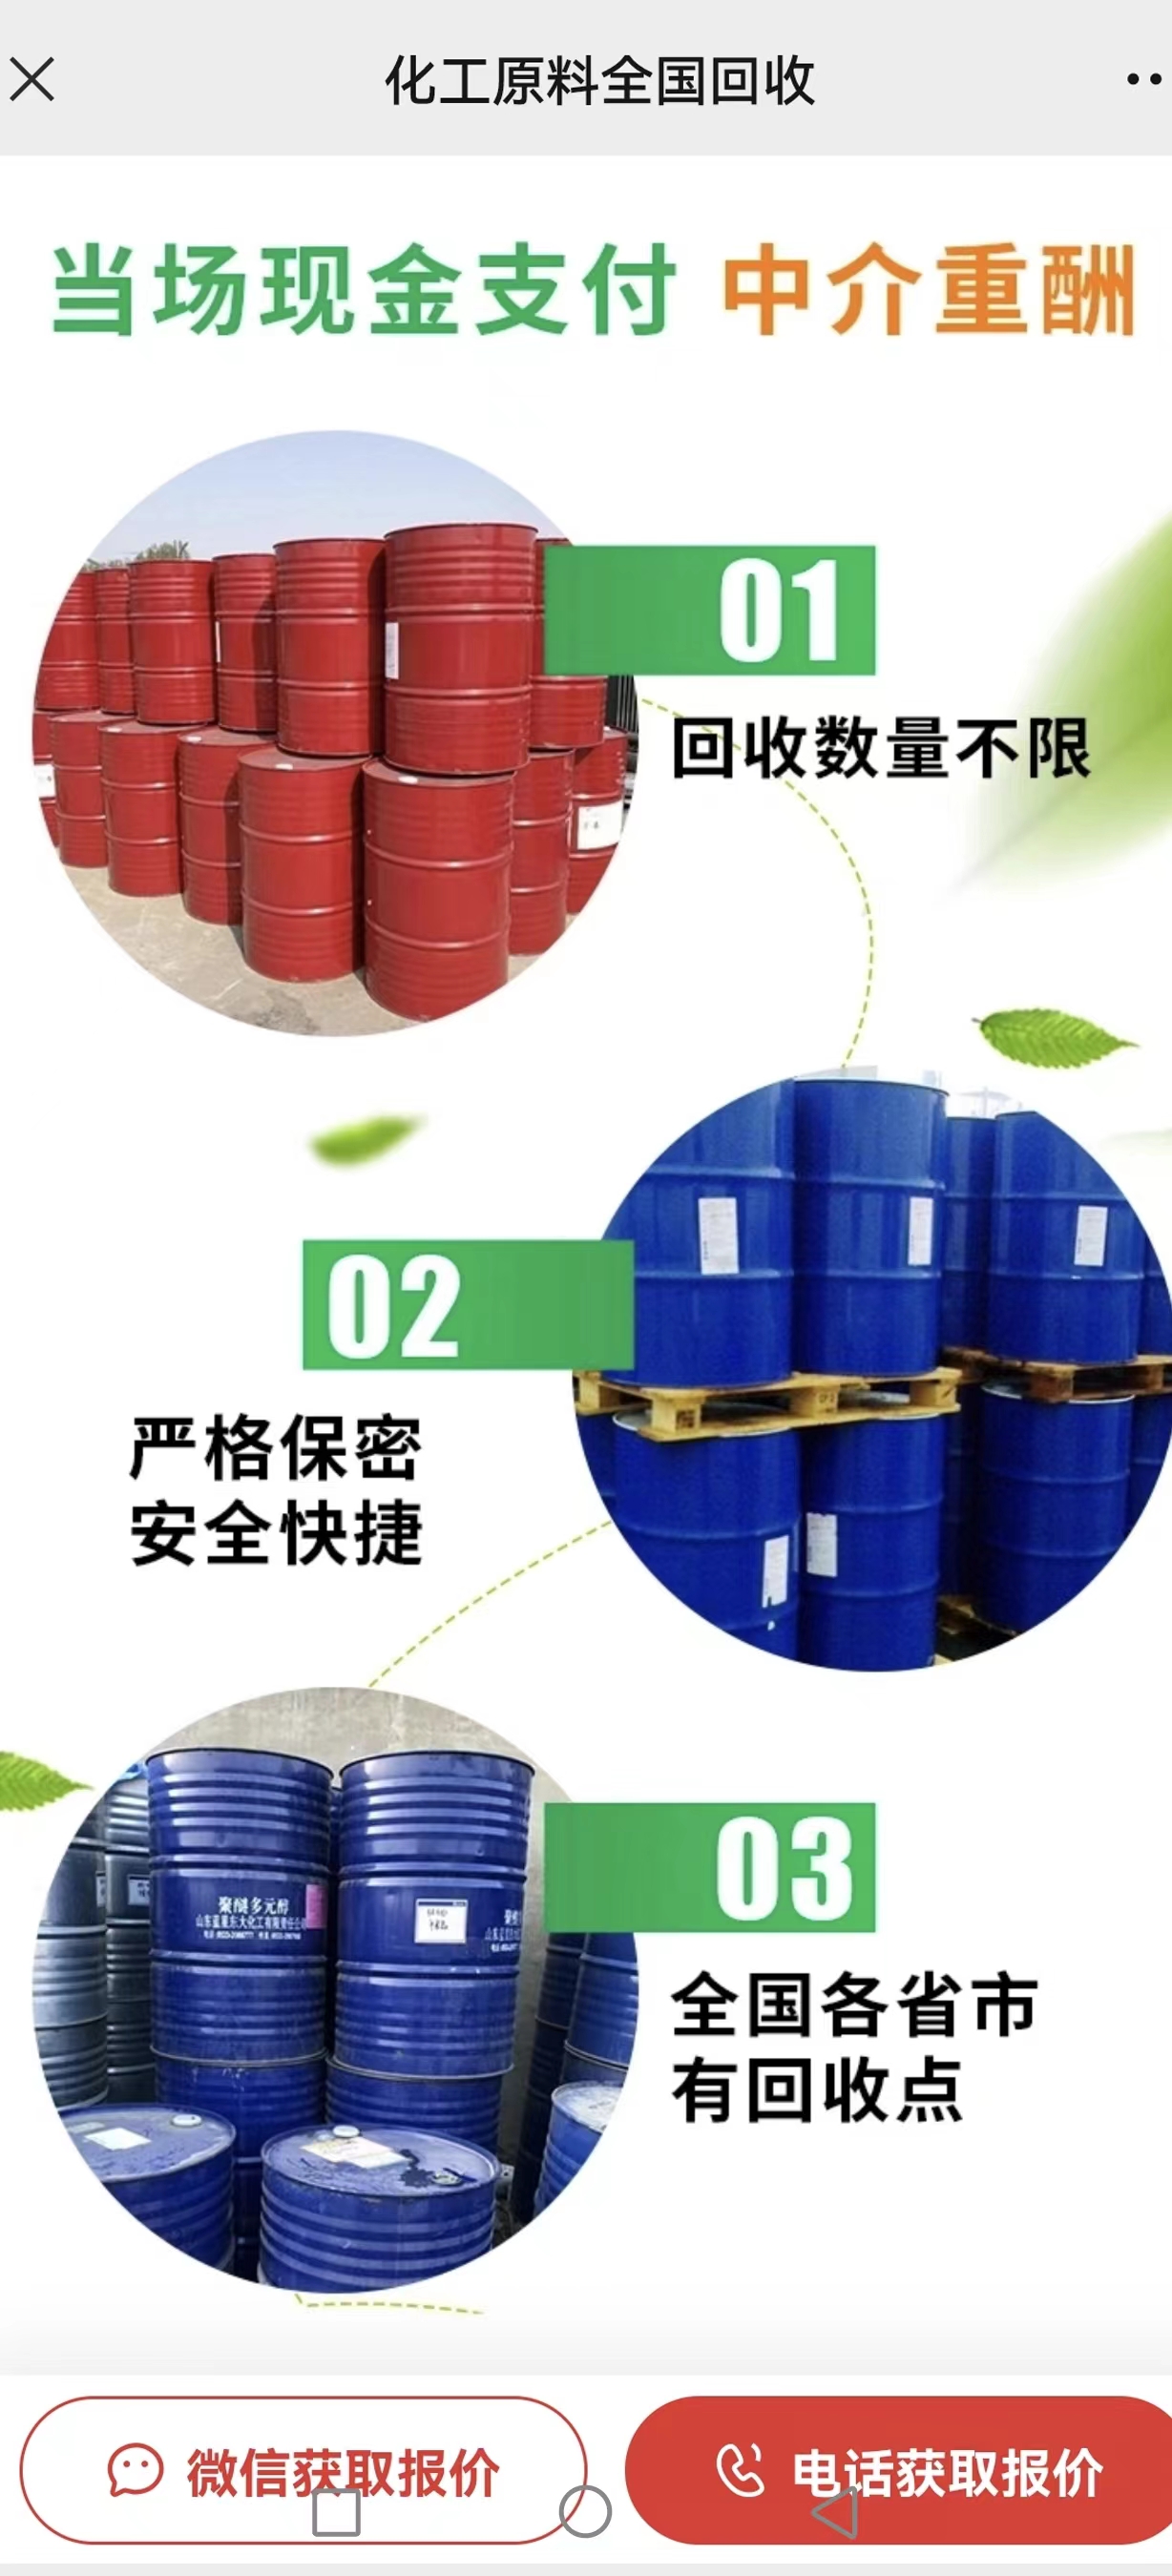 惠州市博罗县回收黄原胶回收硅油